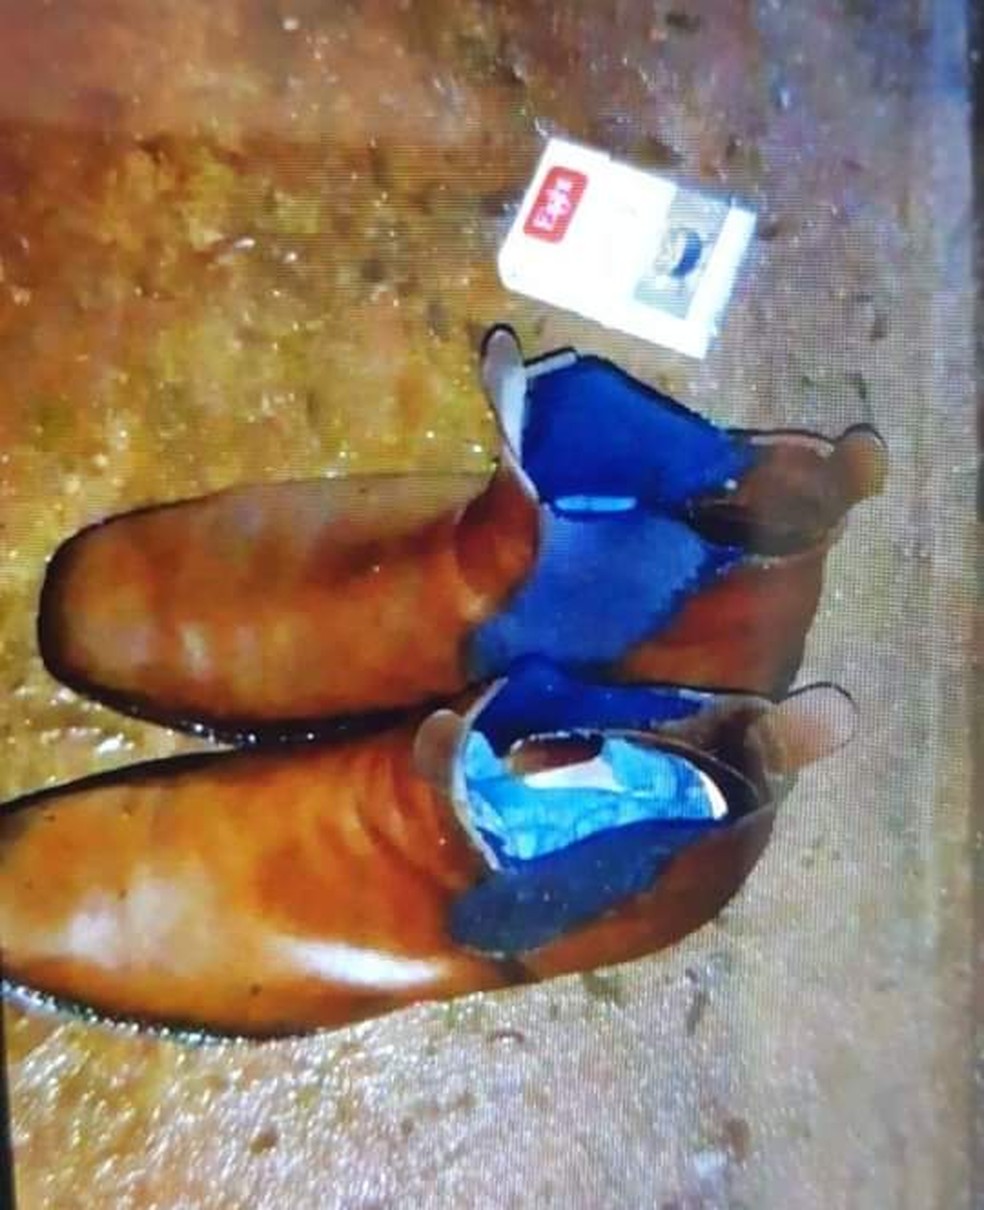 Botas usadas pelo idoso foram encontradas próximas ao rio em Bocaina  — Foto: Arquivo pessoal 